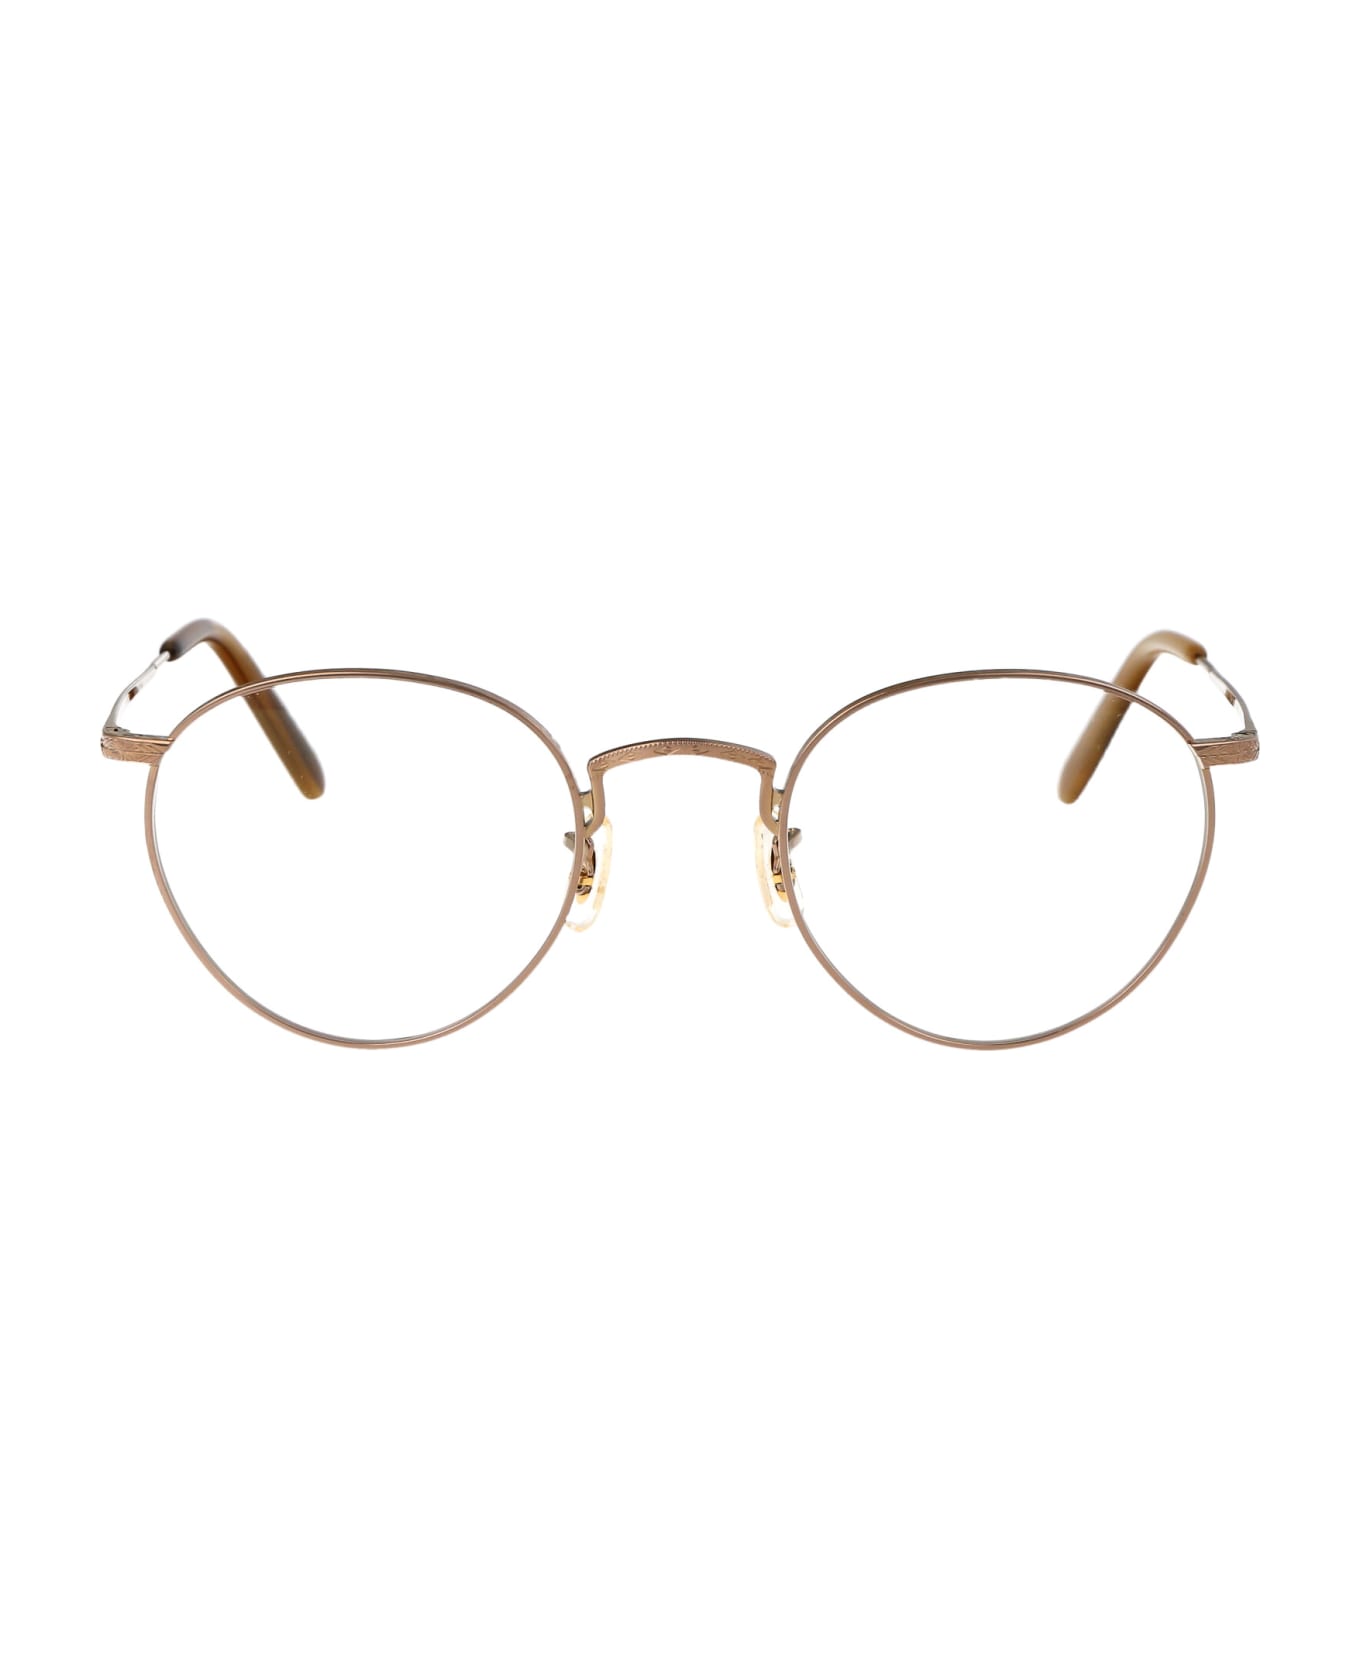 Oliver Peoples Op-47 Glasses - 5035 Gold